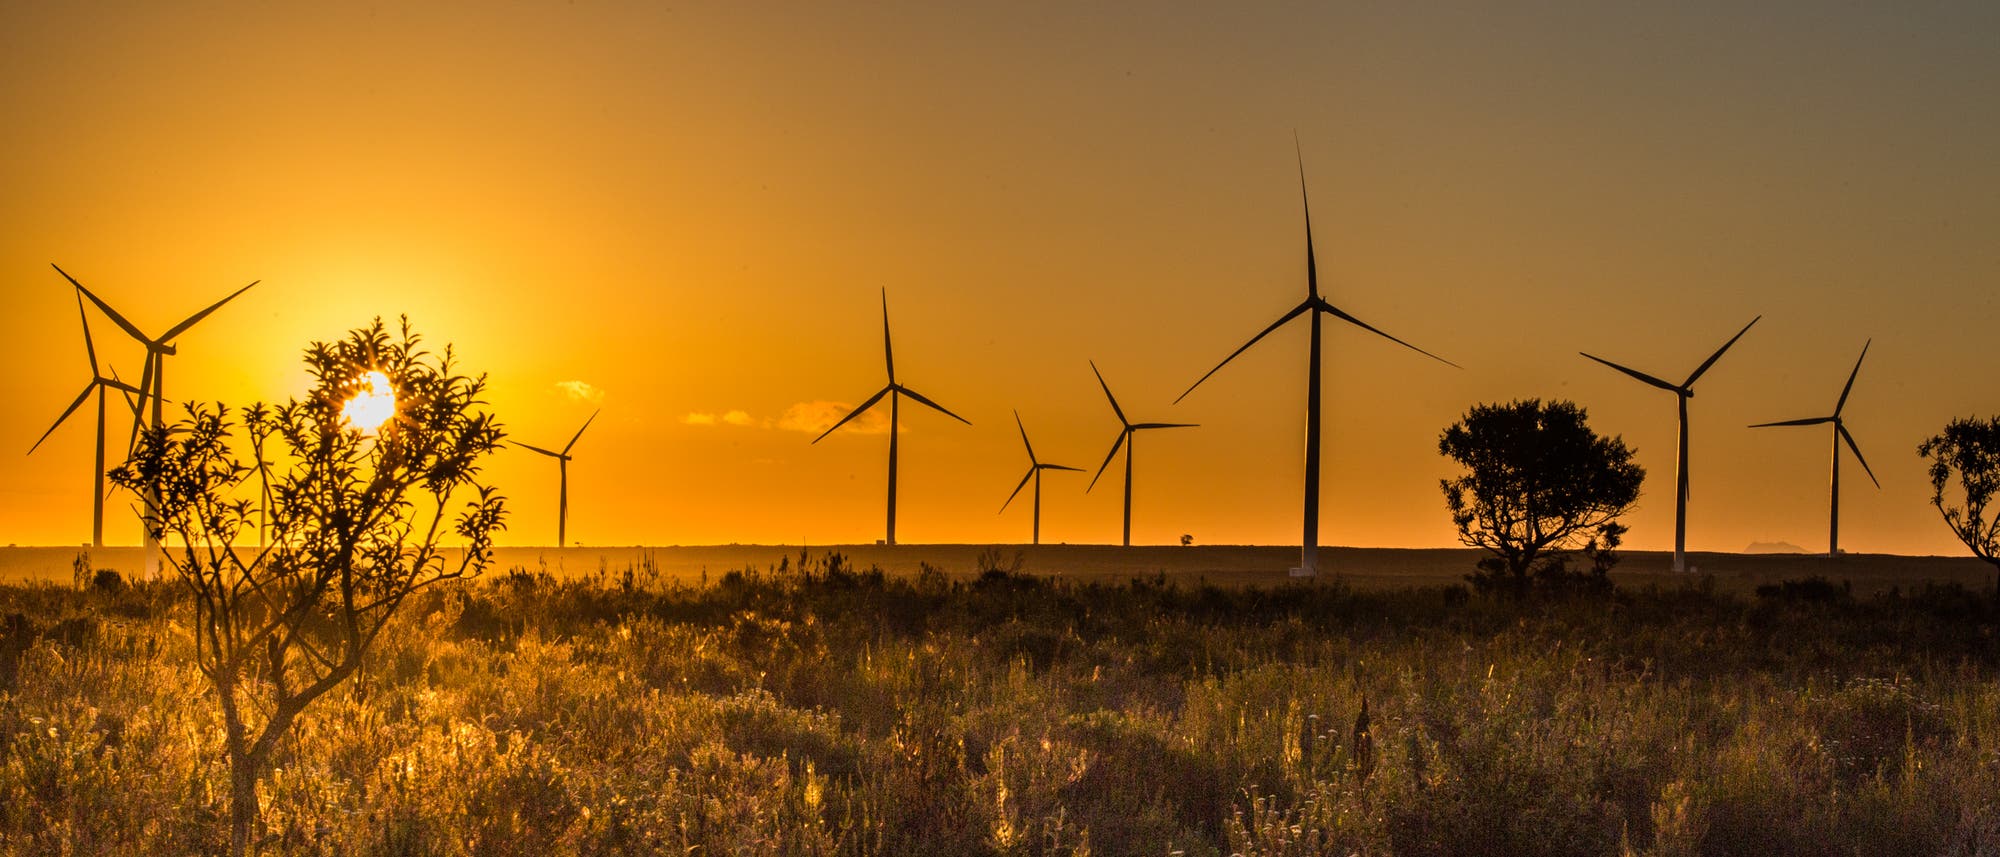 Die Jeffreys Bay Wind Farm an der windreichen Südküste Südafrikas westlich von Port Elizabeth liefert reichlich 50 Megawatt elektrische Energie im Jahresdurchschnitt – ausreichend für 100 000 Haushalte.